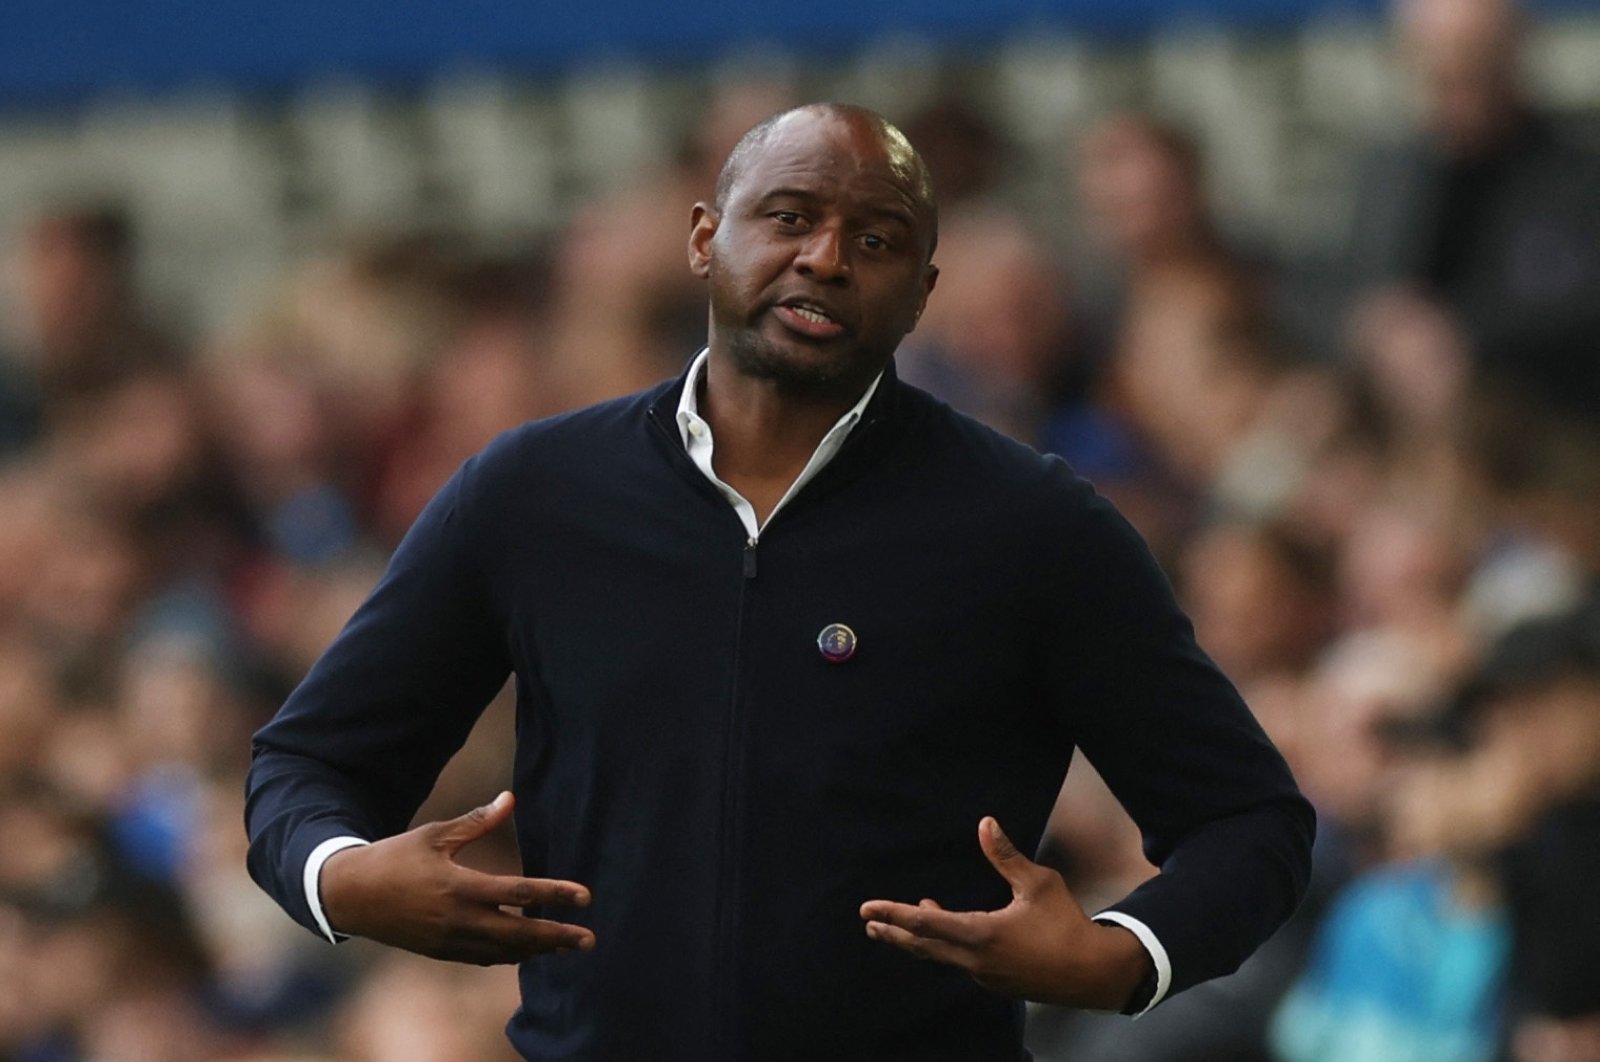 Vieira menyoroti ‘kurangnya kesempatan’ bagi manajer kulit hitam